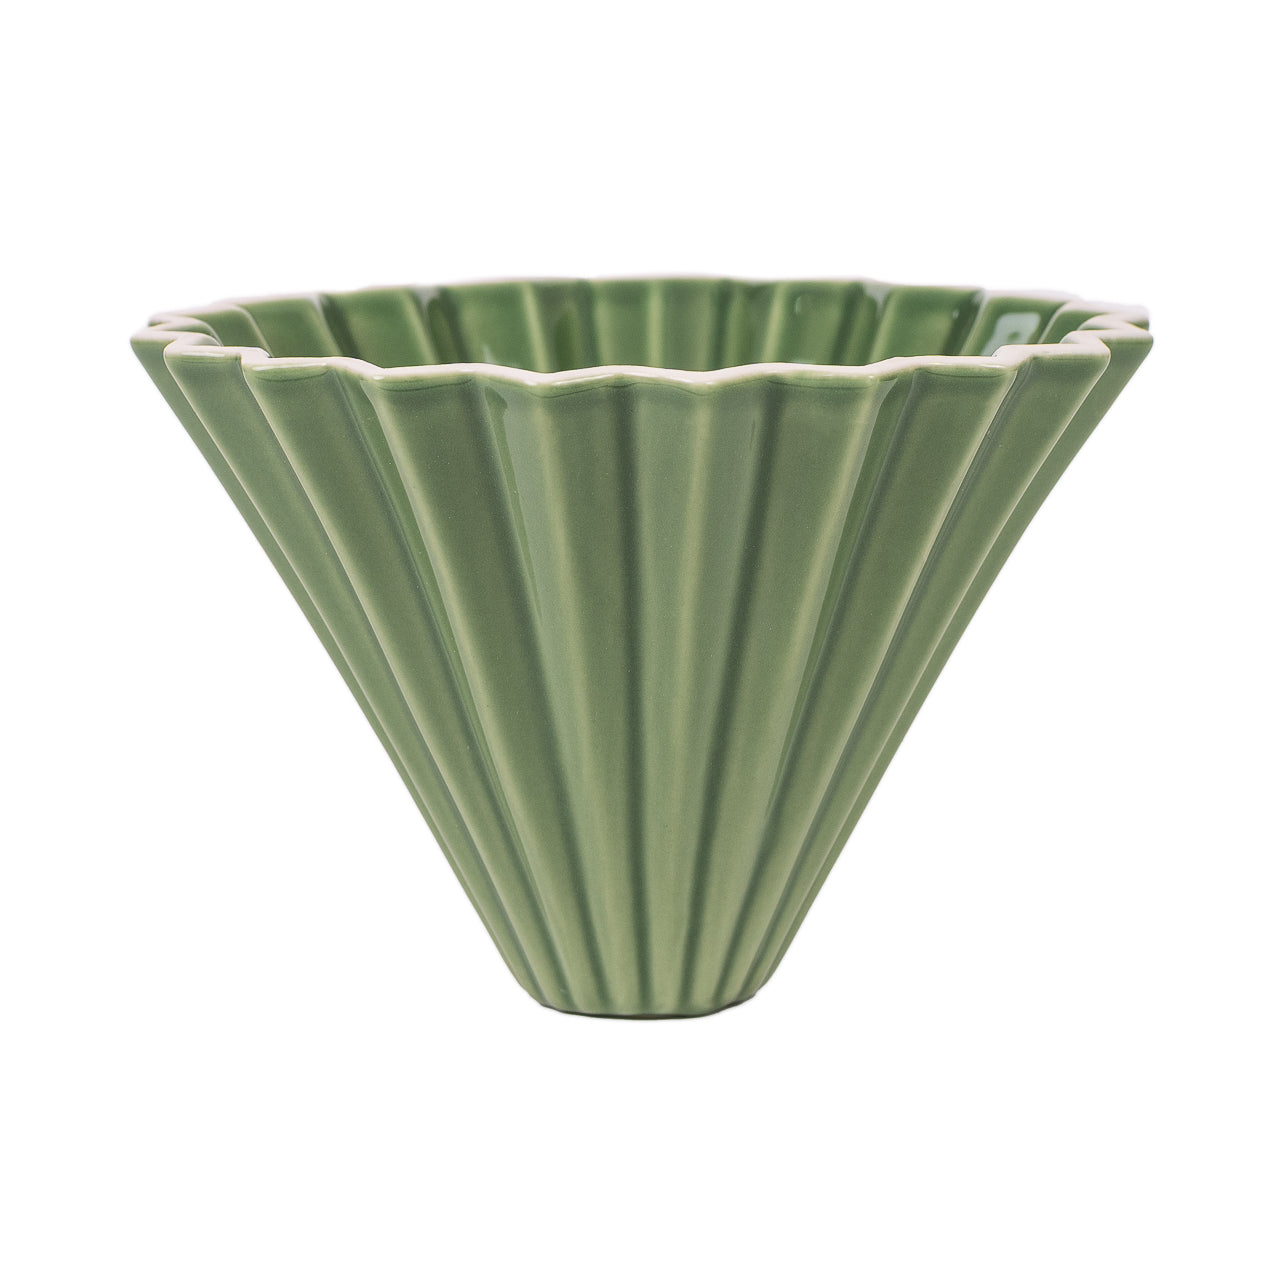 Origami ceramica verde